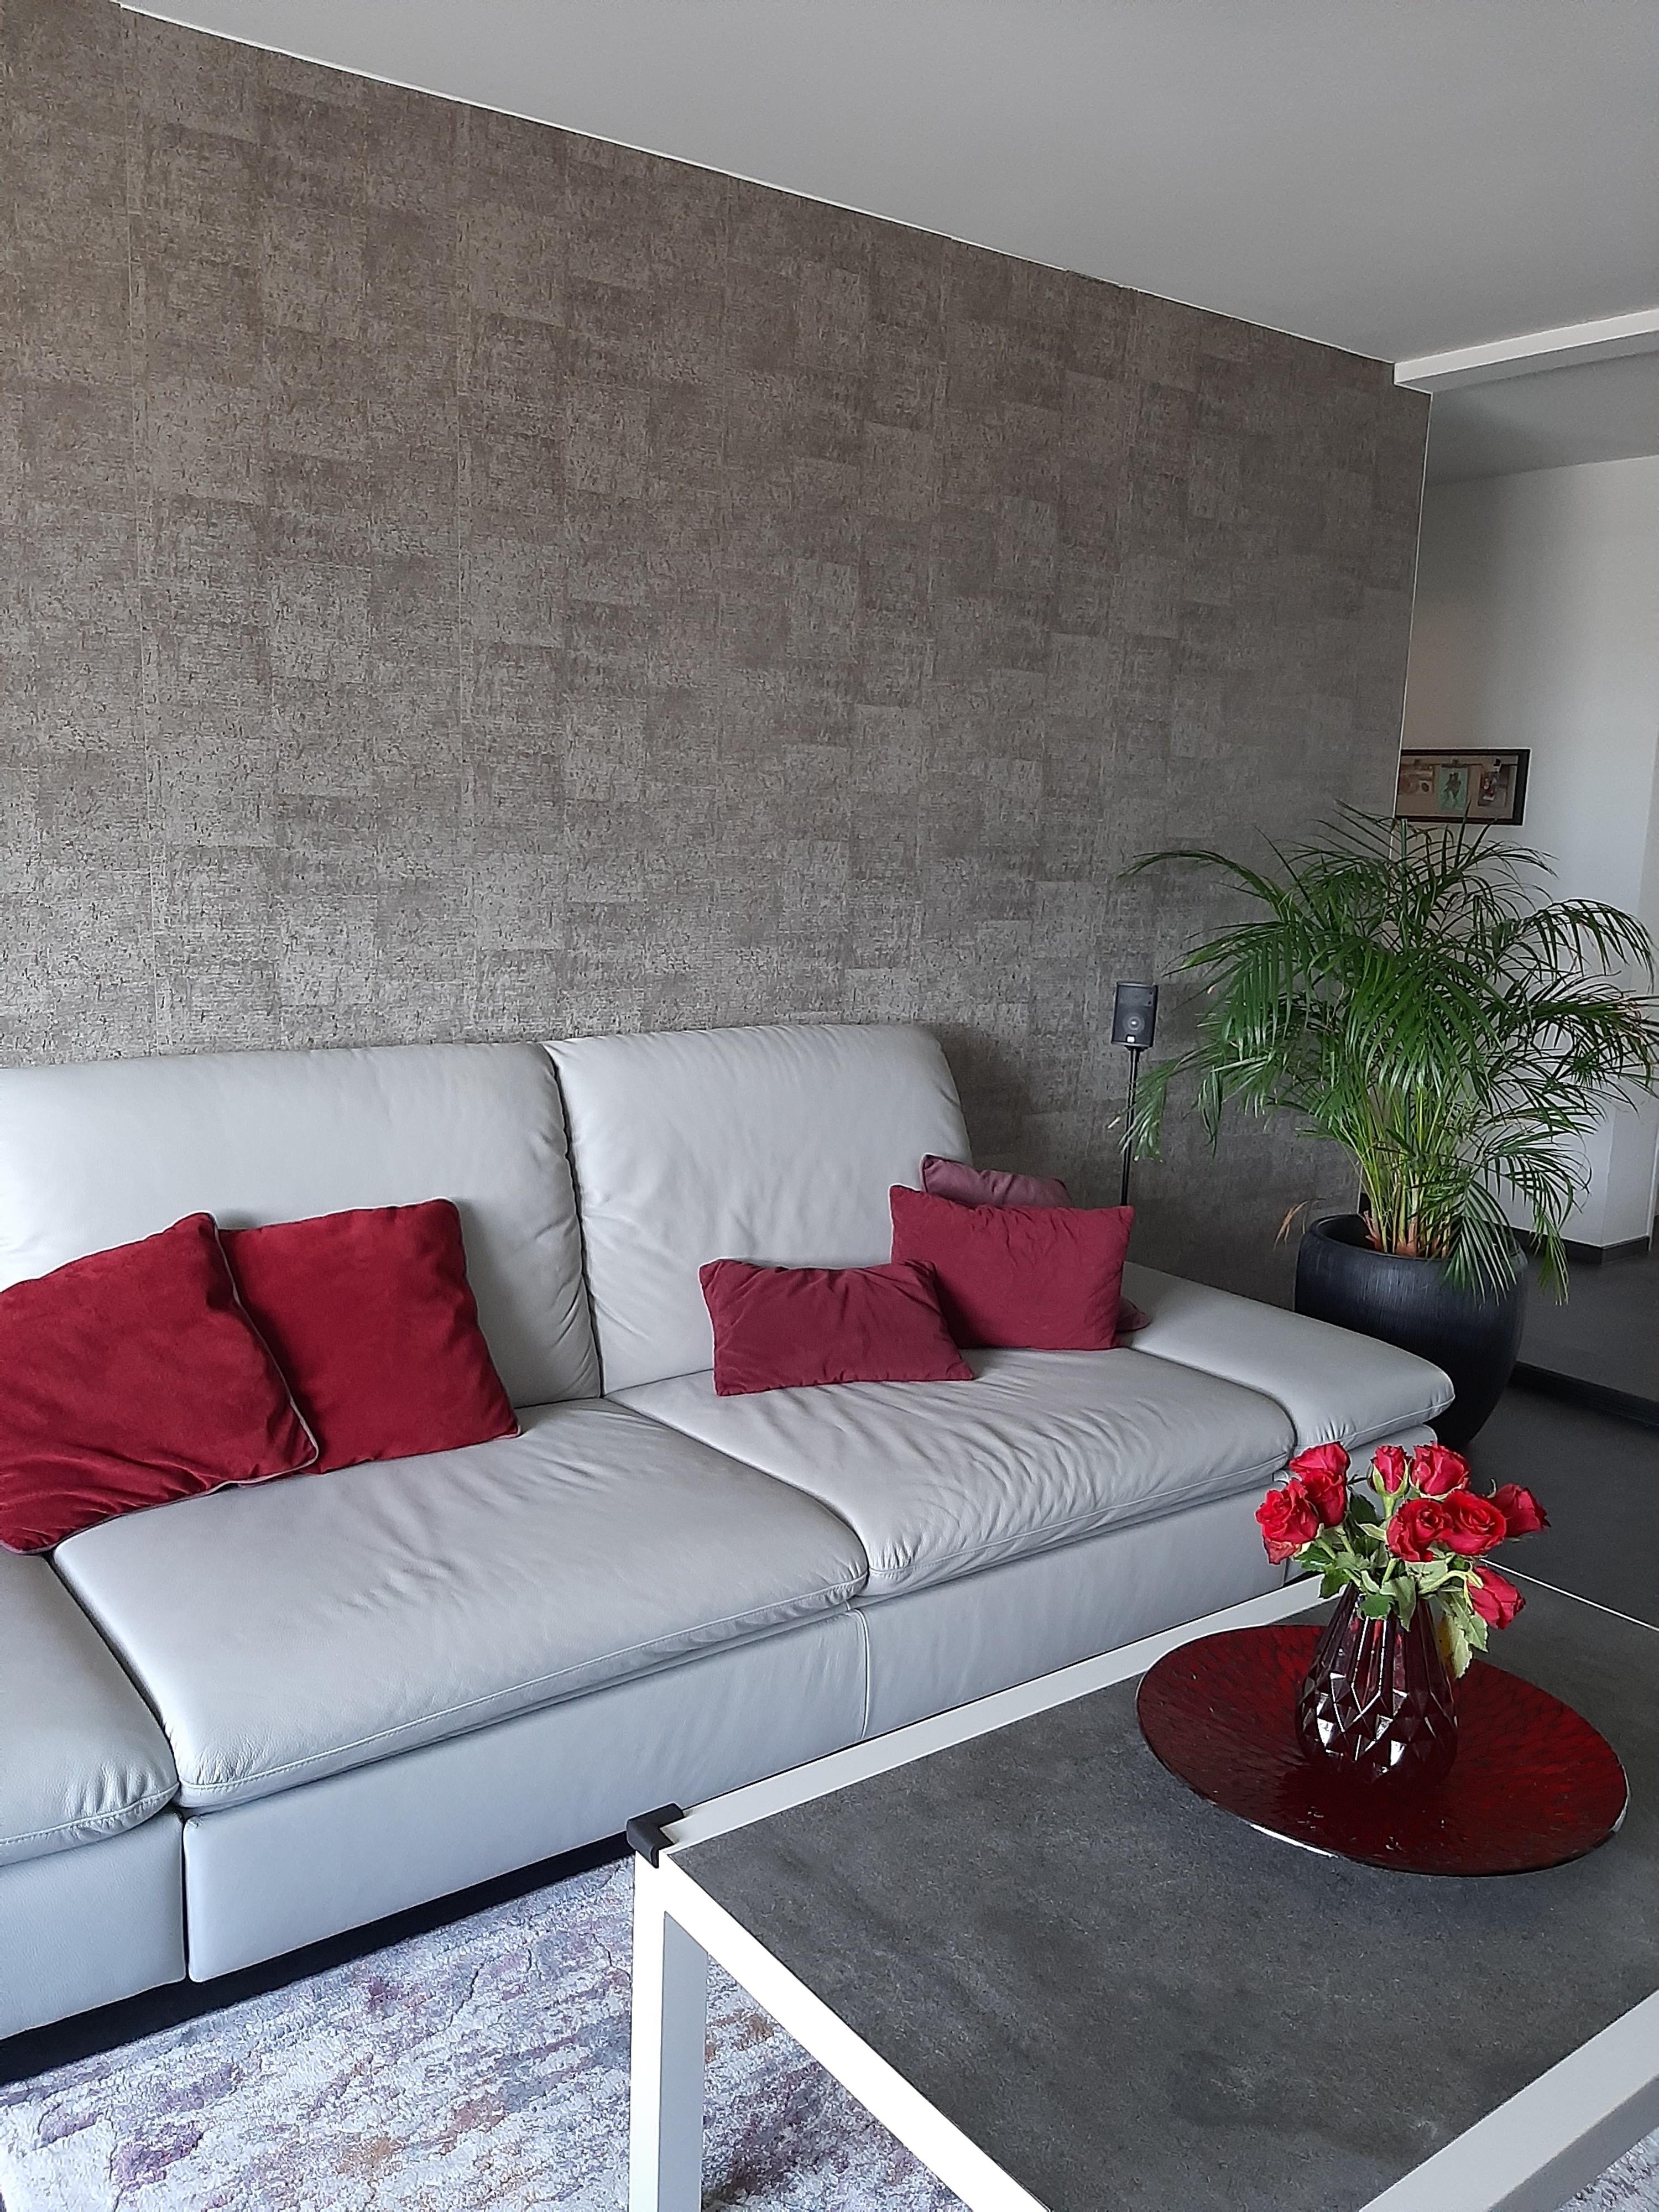 Endlich ist die neue Wandgestaltung fertig. 
#tapete #Wandgestaltung #Wohnzimmer 